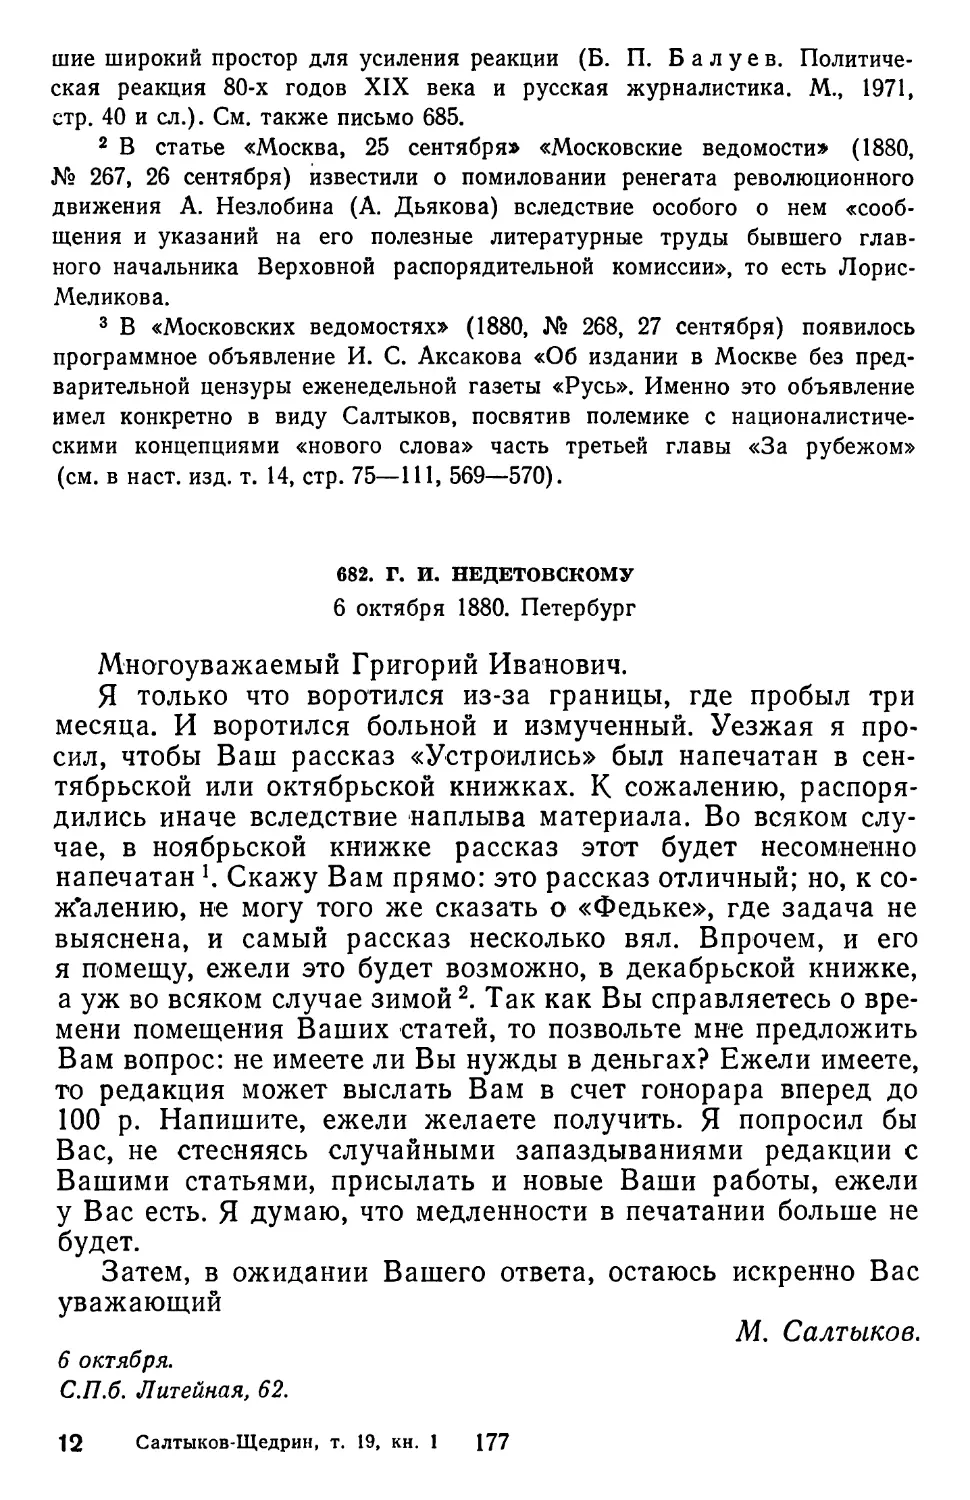 682.Г. И. Недетовскому. 6 октября 1880. Петербург